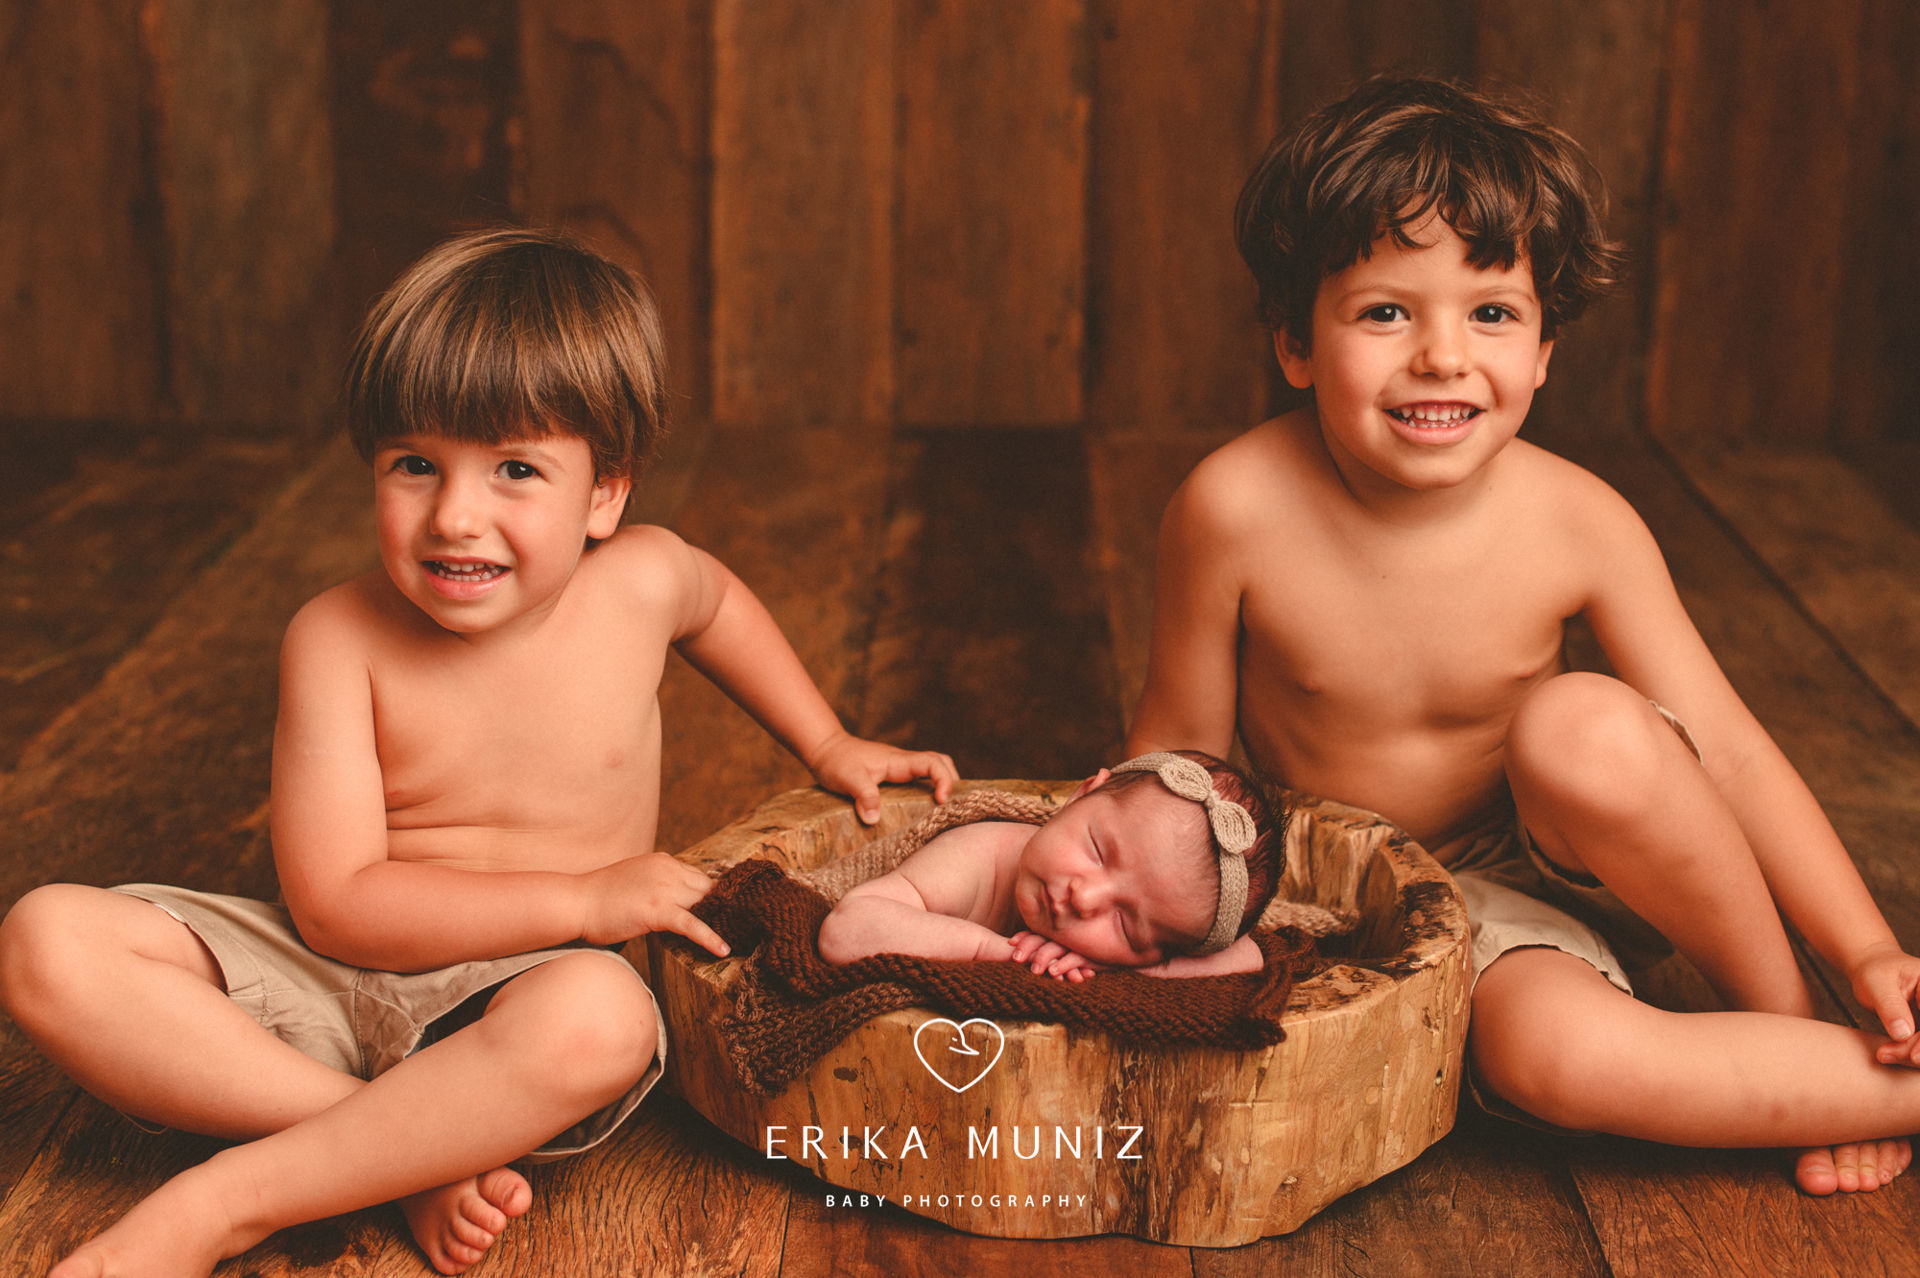 A Trajetória De Erika Muniz Referência Em Fotografia Newborn Dicas Para Fotógrafos E Notícias 